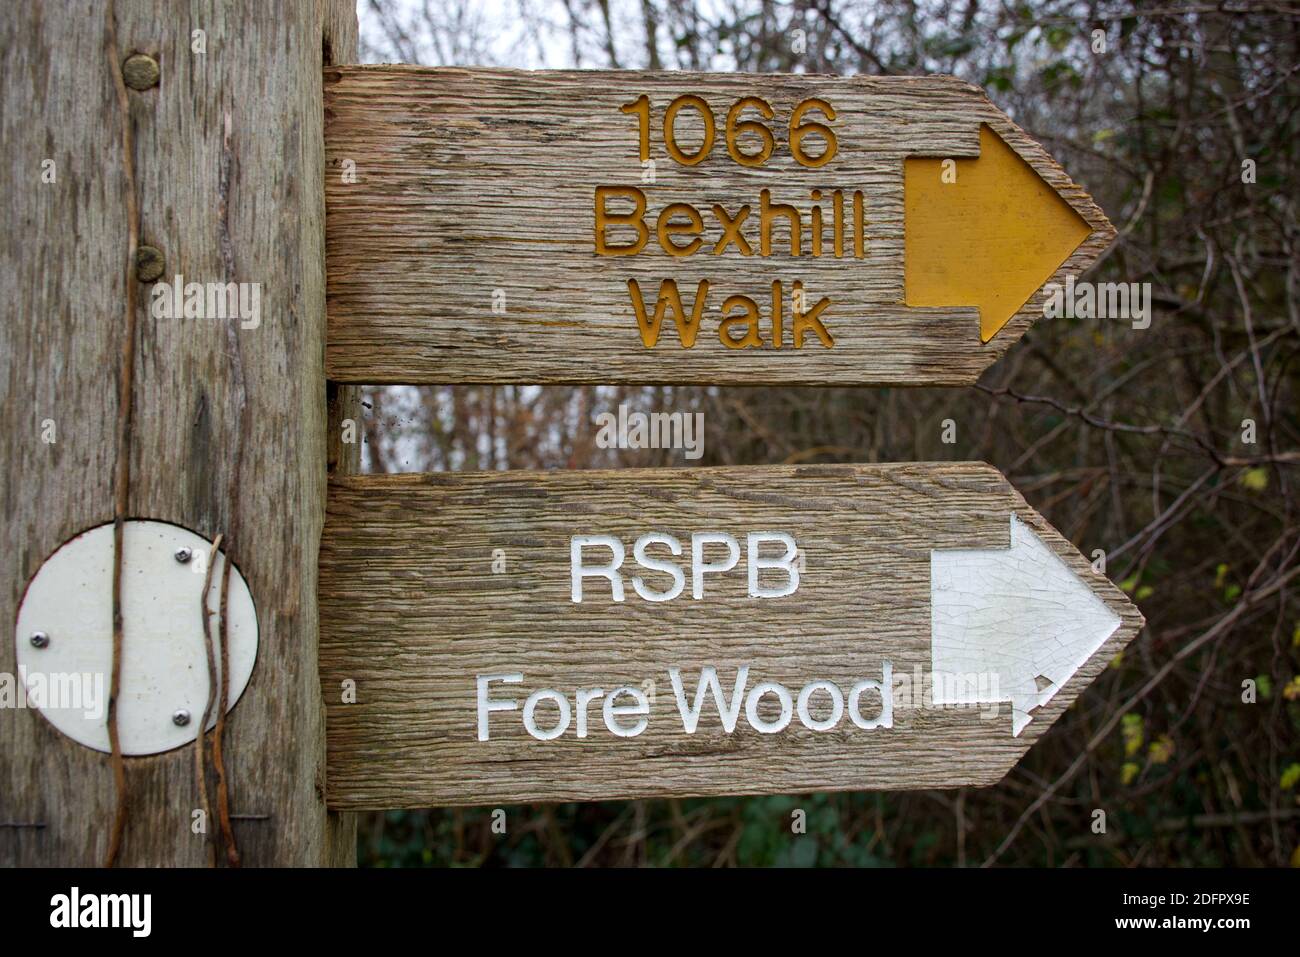 Ein Fingerpfosten zeigt die Richtung für die 1066 Bexhill Walk und zum RSPB Wildlife Reserve von Fore Wood, in Crowhurst. Stockfoto